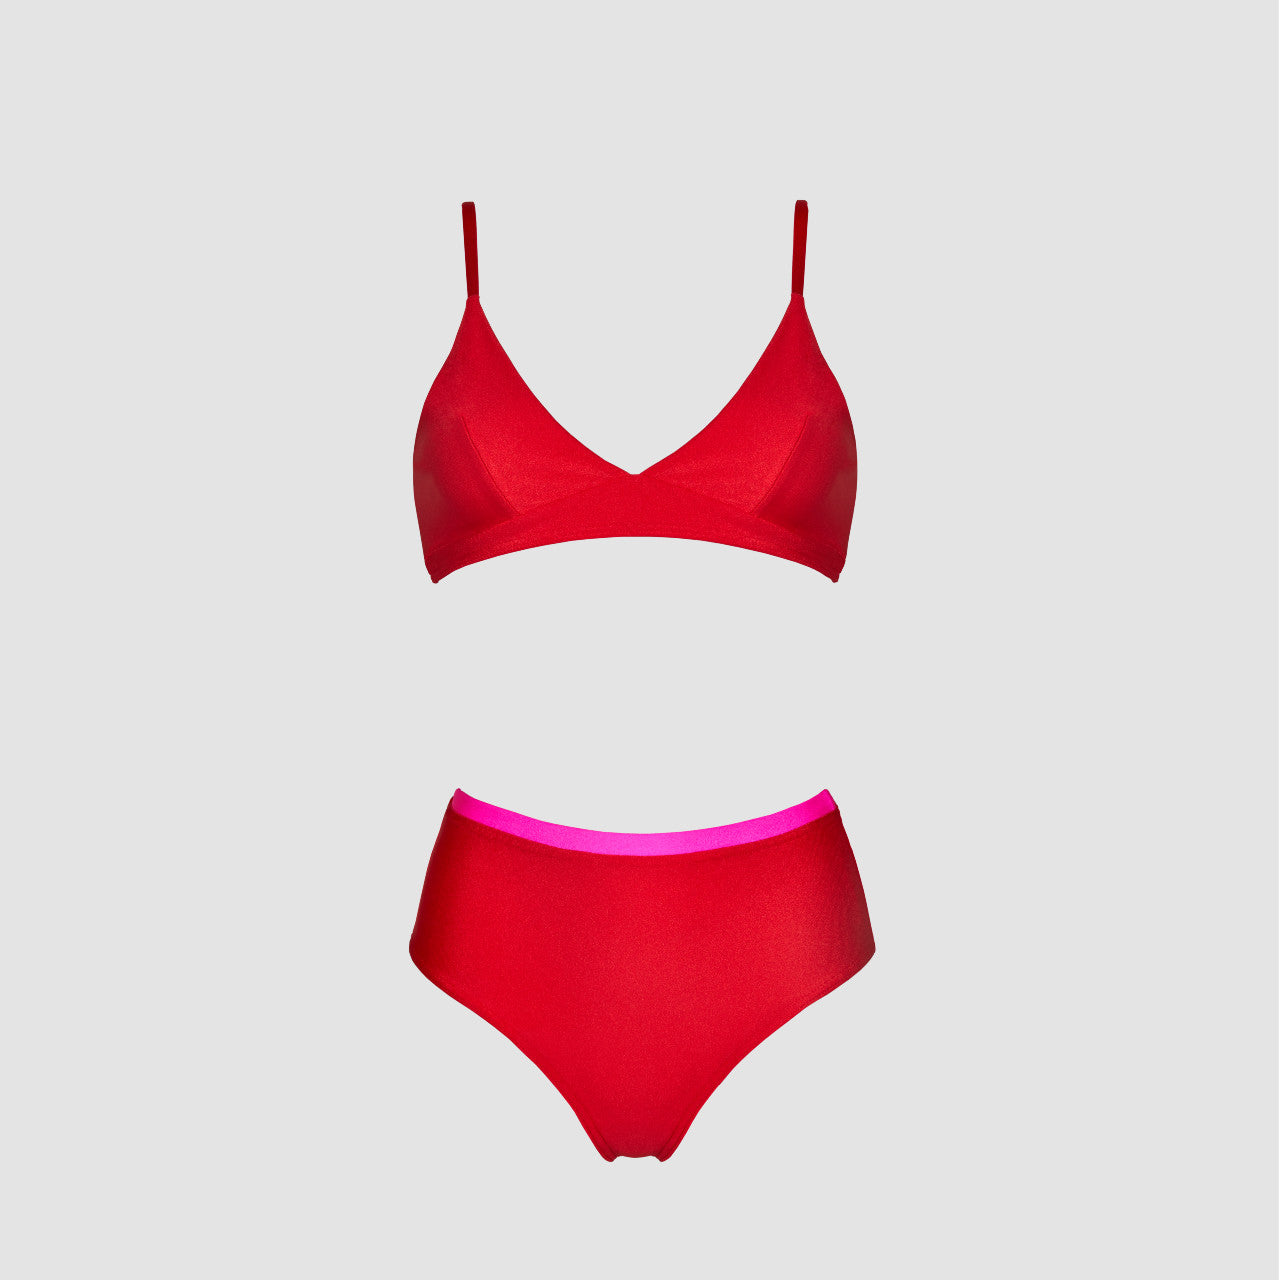 Dvoudílné plavky Donna ve výrazné červené podtrhnou vaši ženskost a přirozenou krásu. 